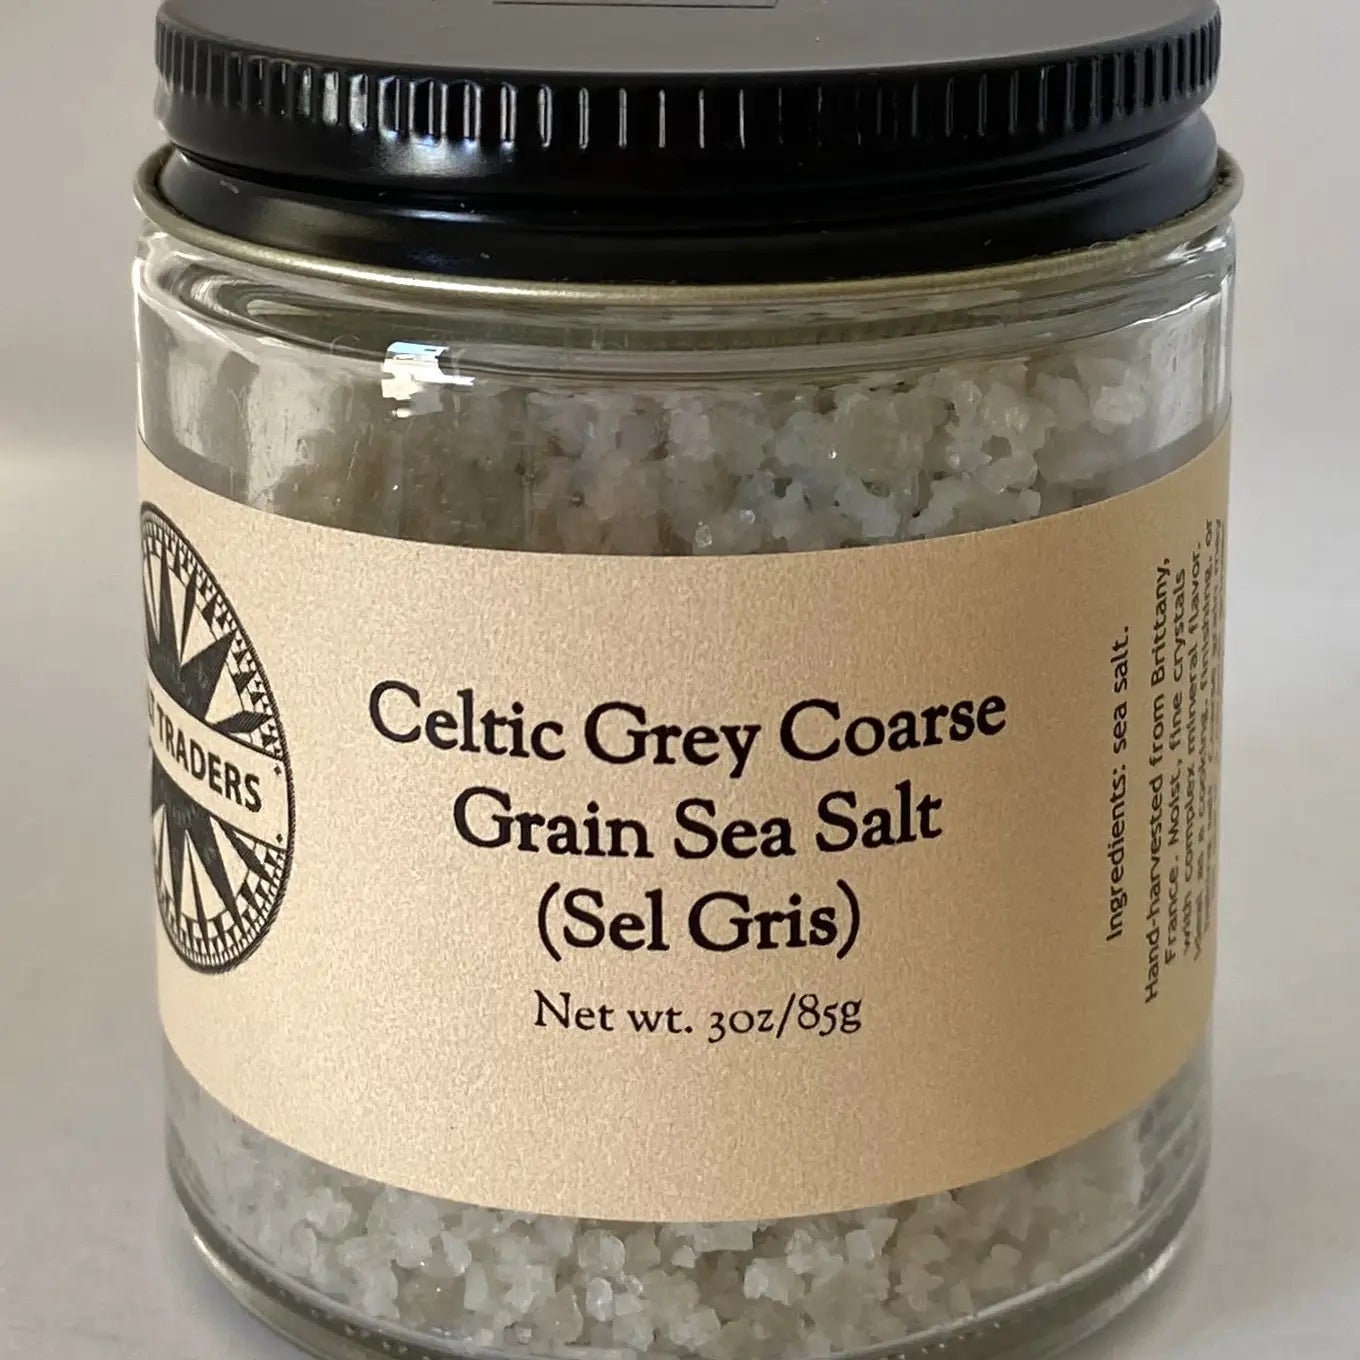 Unrefined Natural Sea Salt - Celtic Sea Salt - Sicilian - Epsom